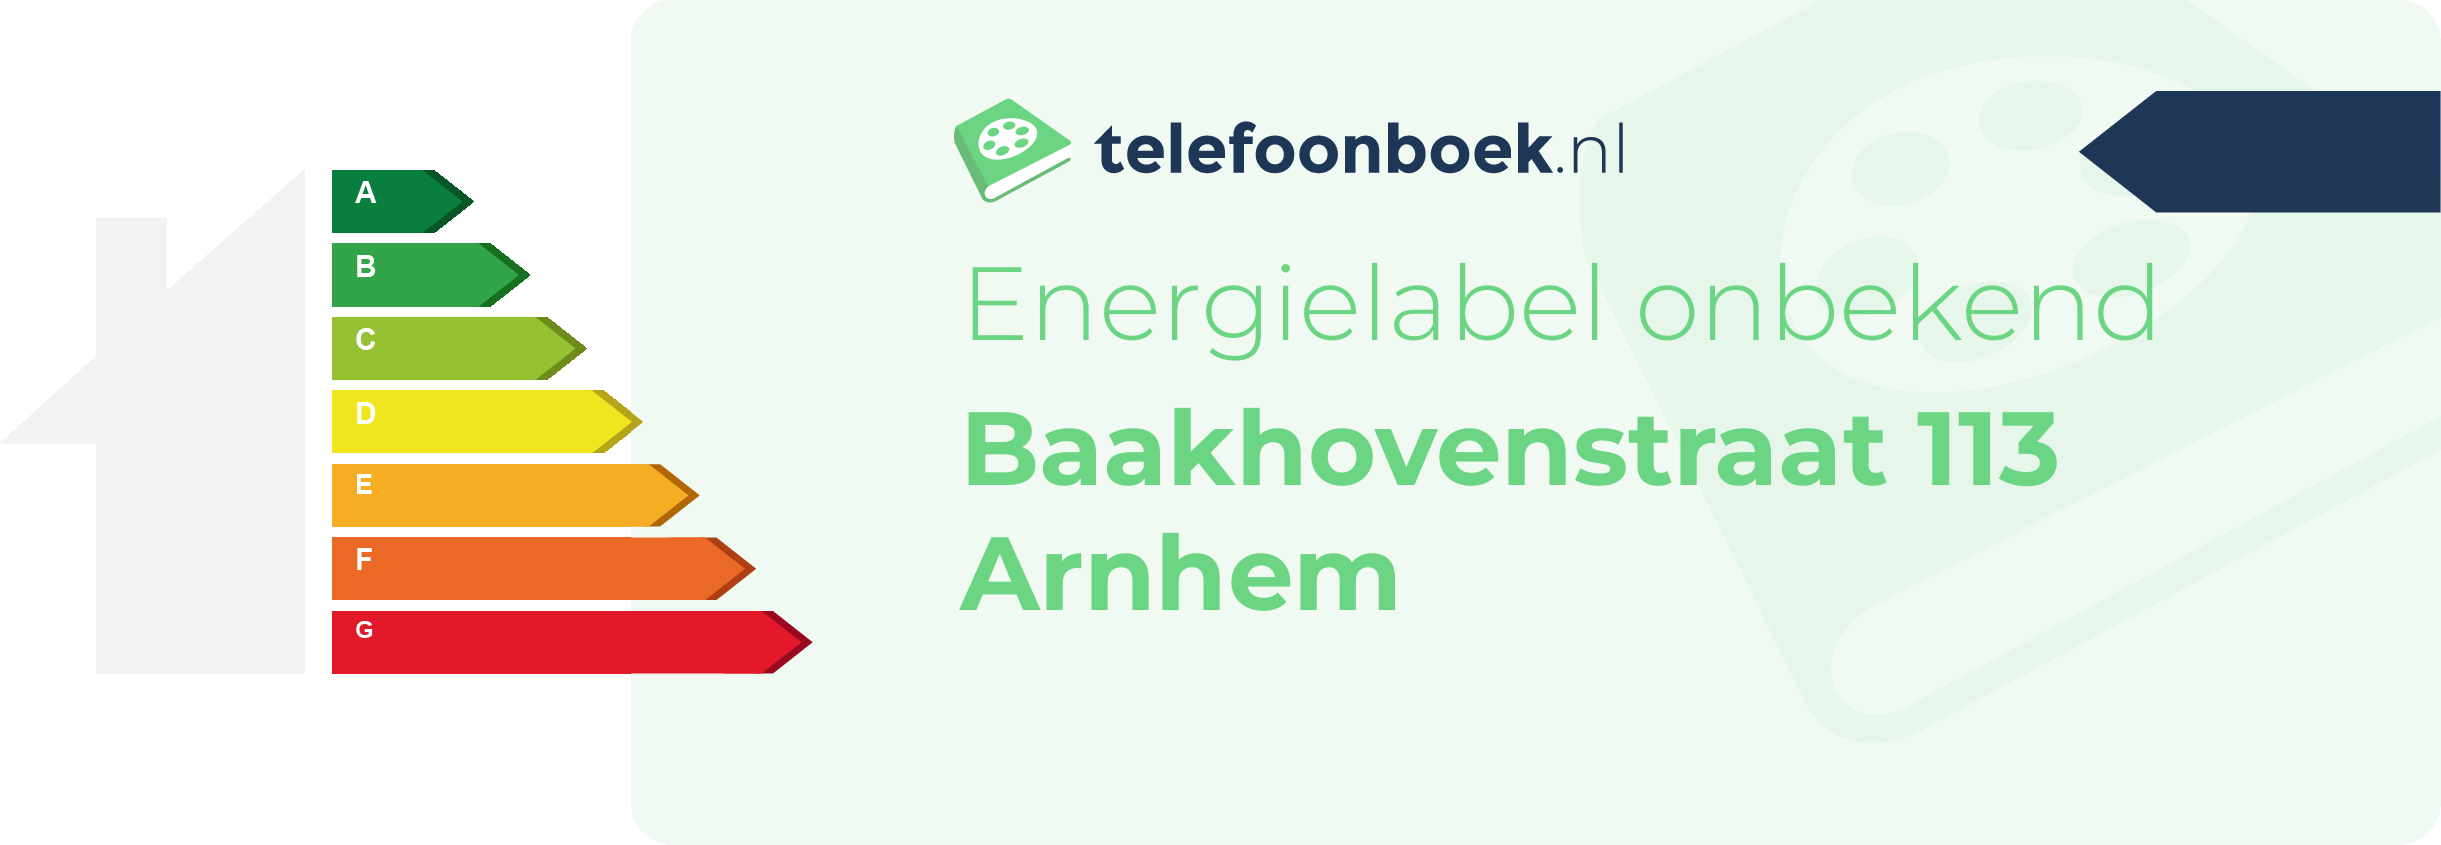 Energielabel Baakhovenstraat 113 Arnhem